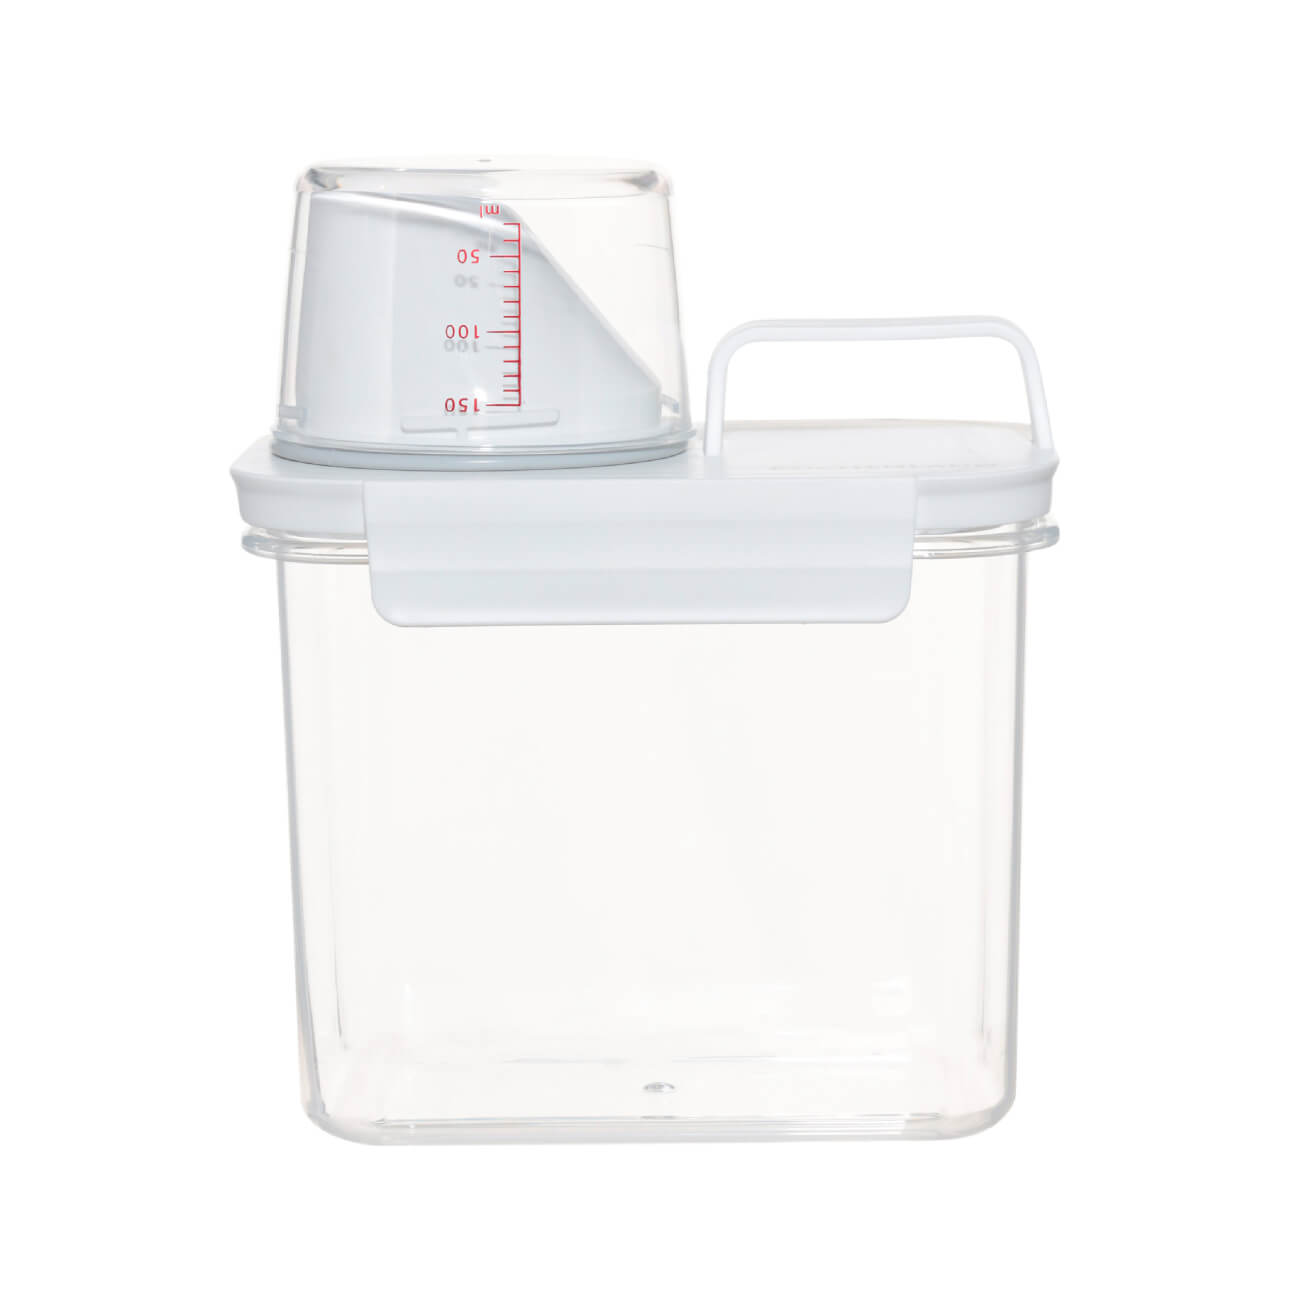 Контейнер для стирального порошка или геля, 1,1 л, с мерником, пластик, белый, Compact контейнер для порошка 5 л ведерко полимербыт с493 4349300